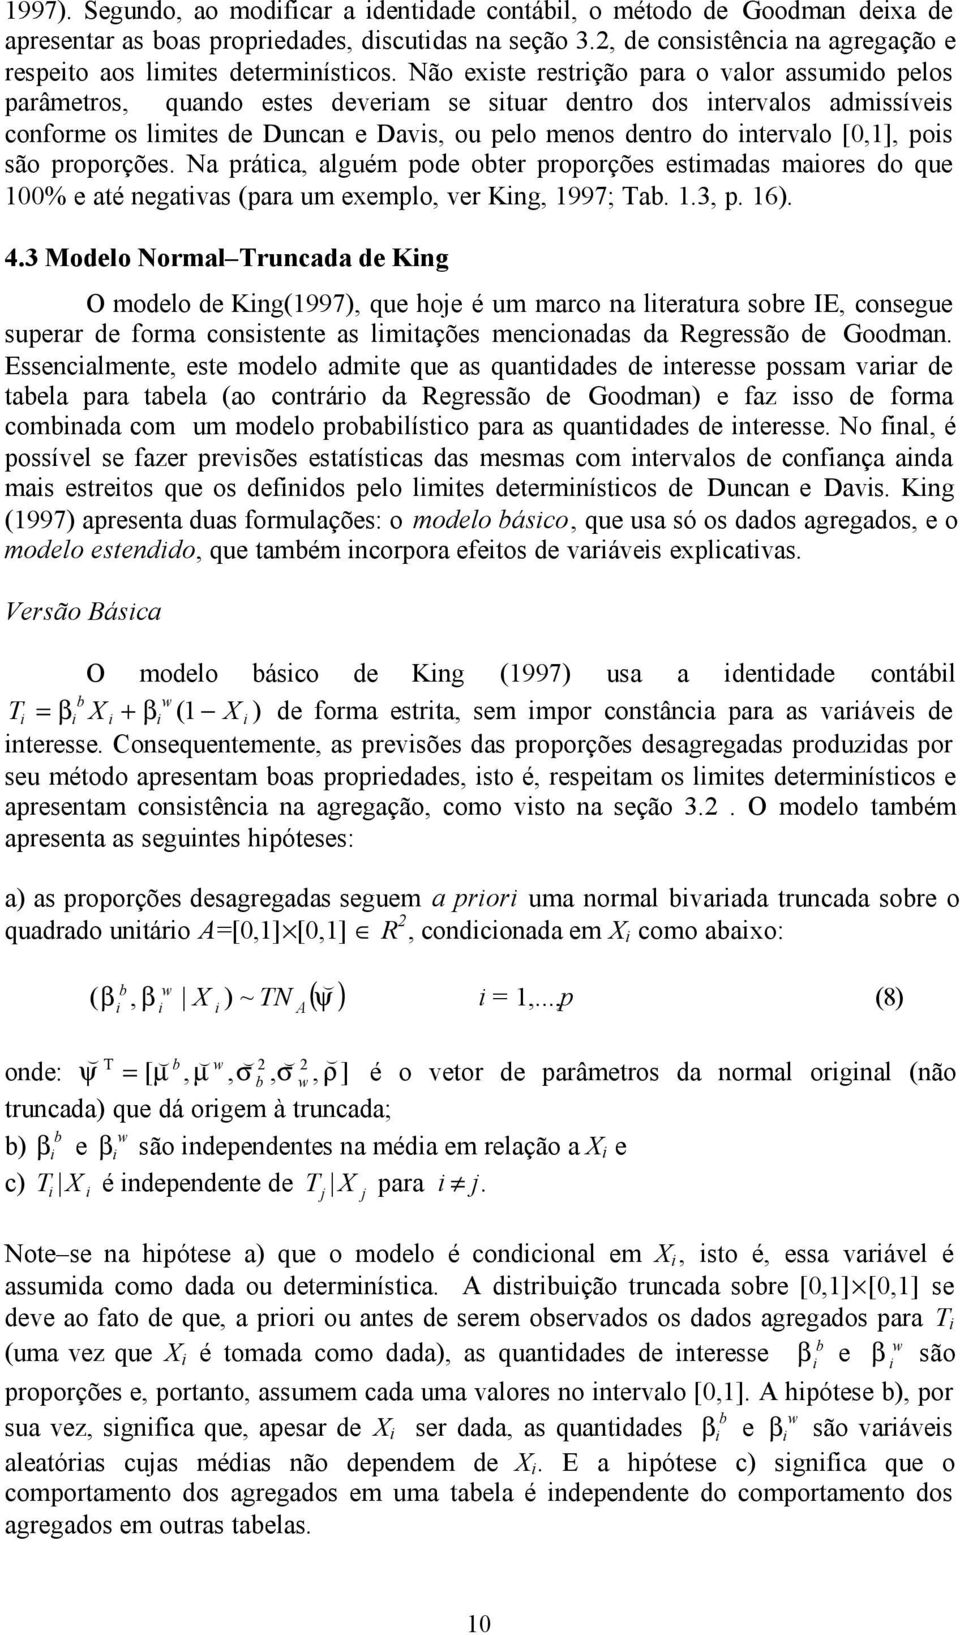 são proporções. Na prátca, alguém pode oter proporções estmadas maores do que 00% e até negatvas para um exemplo, ver Kng, 997; Ta..3, p. 6). 4.